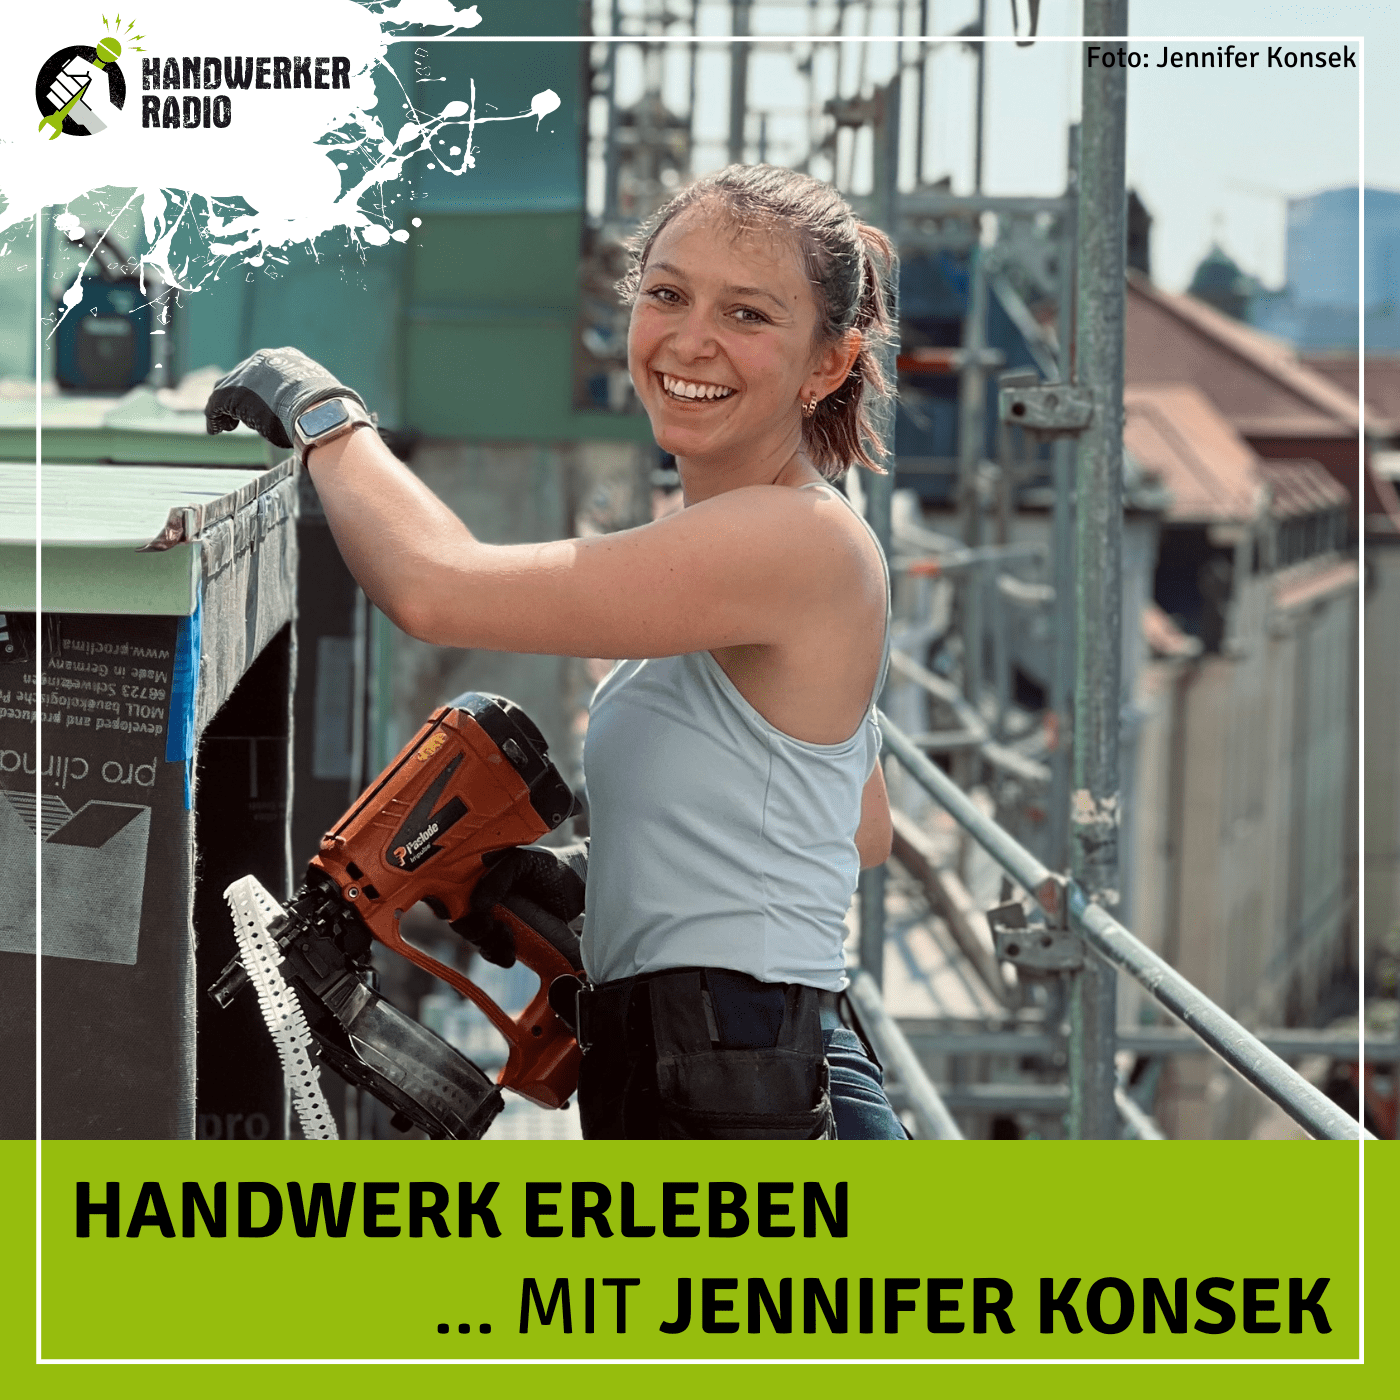 #43 Jennifer Konsek, wie möchtest du als „Sinnfluencerin“ Menschen für das Spenglerhandwerk begeistern?